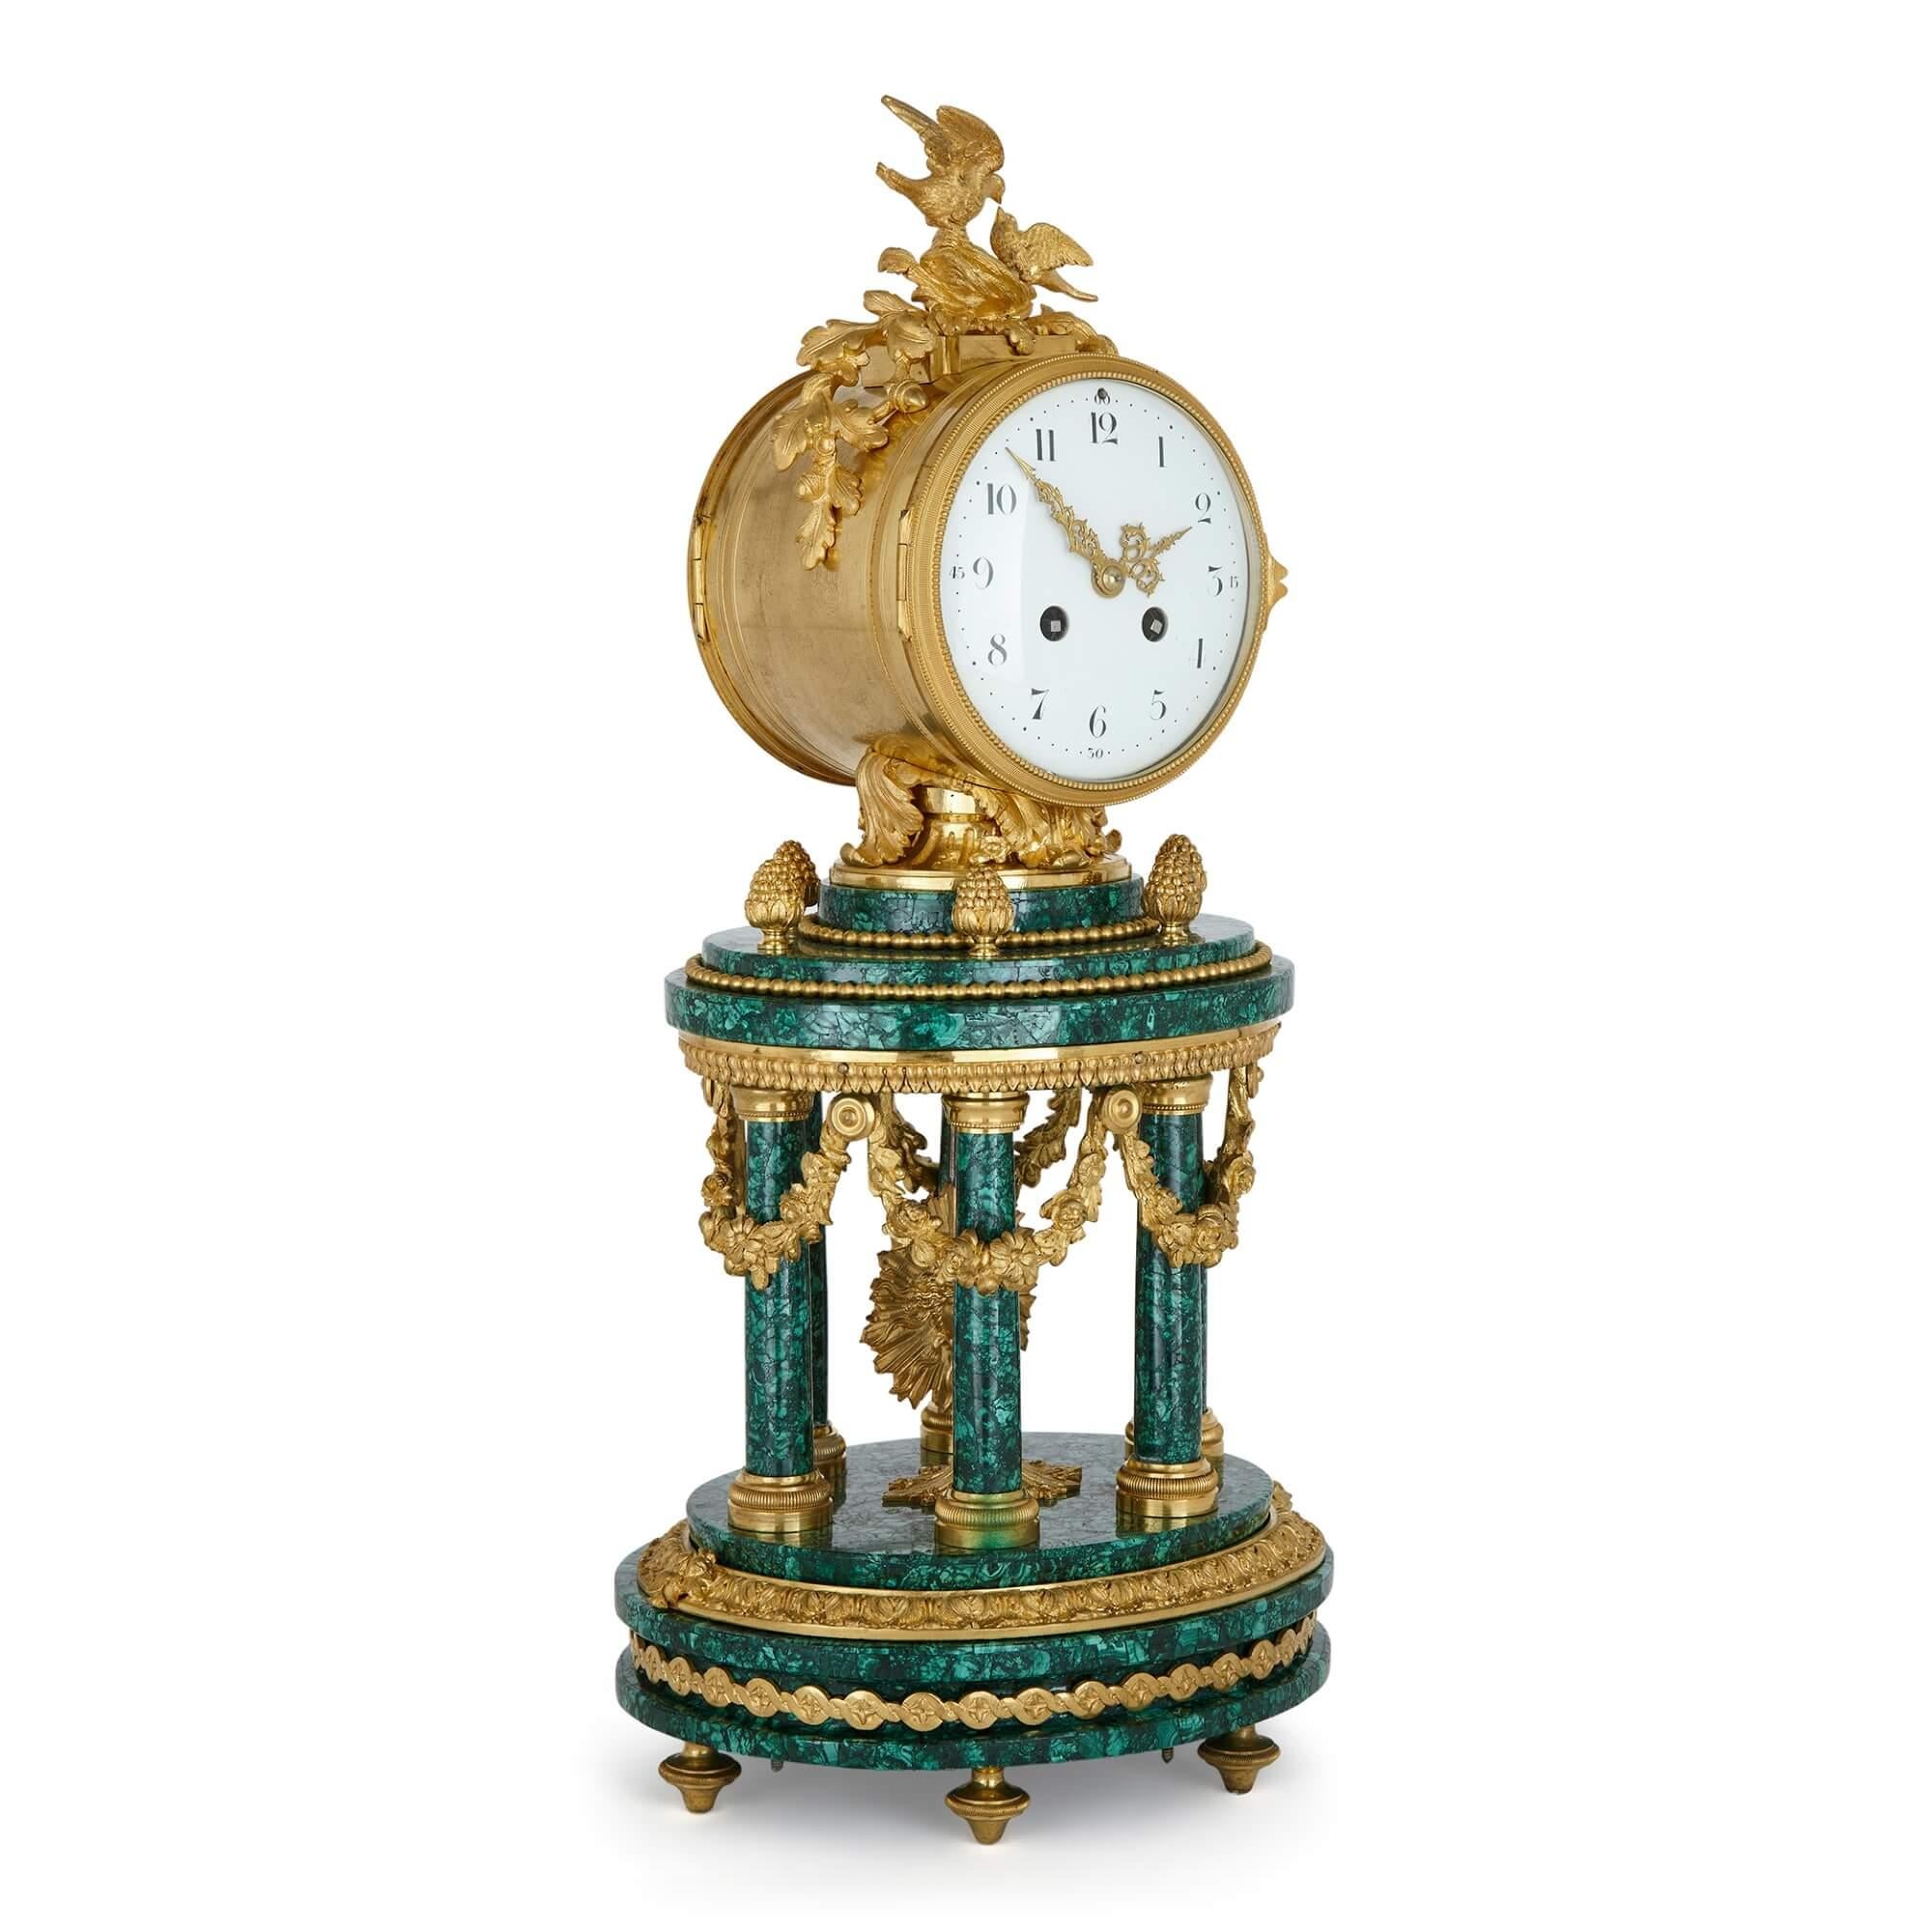 Pendule de cheminée de style Louis XVI à colonne en malachite montée en bronze doré.
France, fin du 19e siècle.
Dimensions : hauteur 52 cm, largeur 23 cm, profondeur 20 cm.

Avec son cadran circulaire enchâssé dans un boîtier rond, cette belle